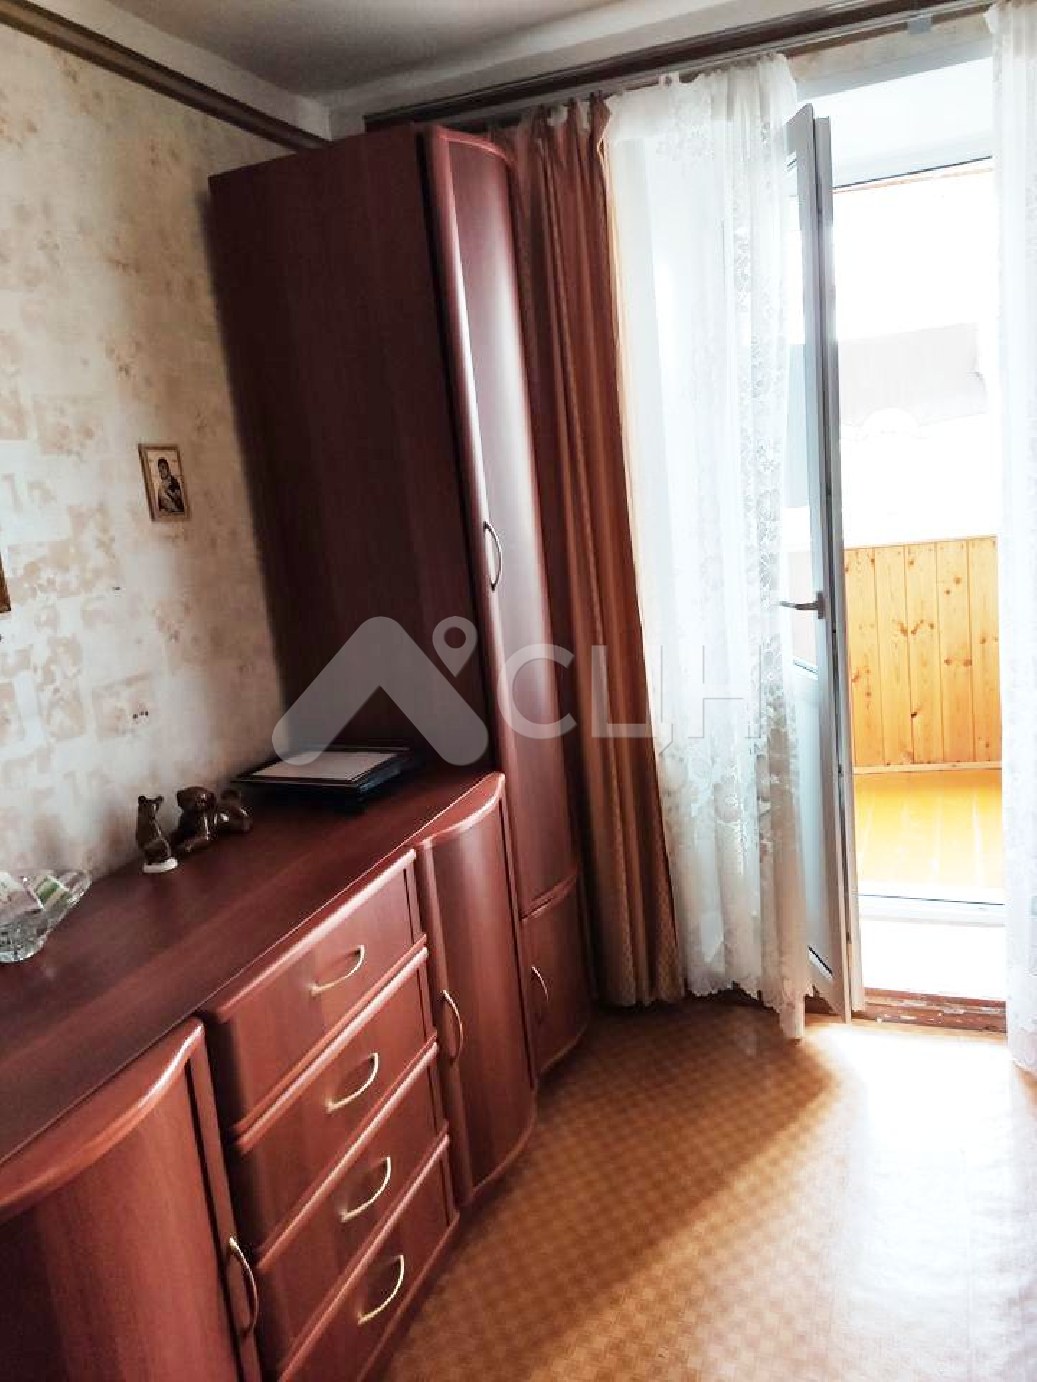 купить недвижимость в сарове
: Г. Саров, улица Некрасова, 11, 3-комн квартира, этаж 2 из 9, продажа.